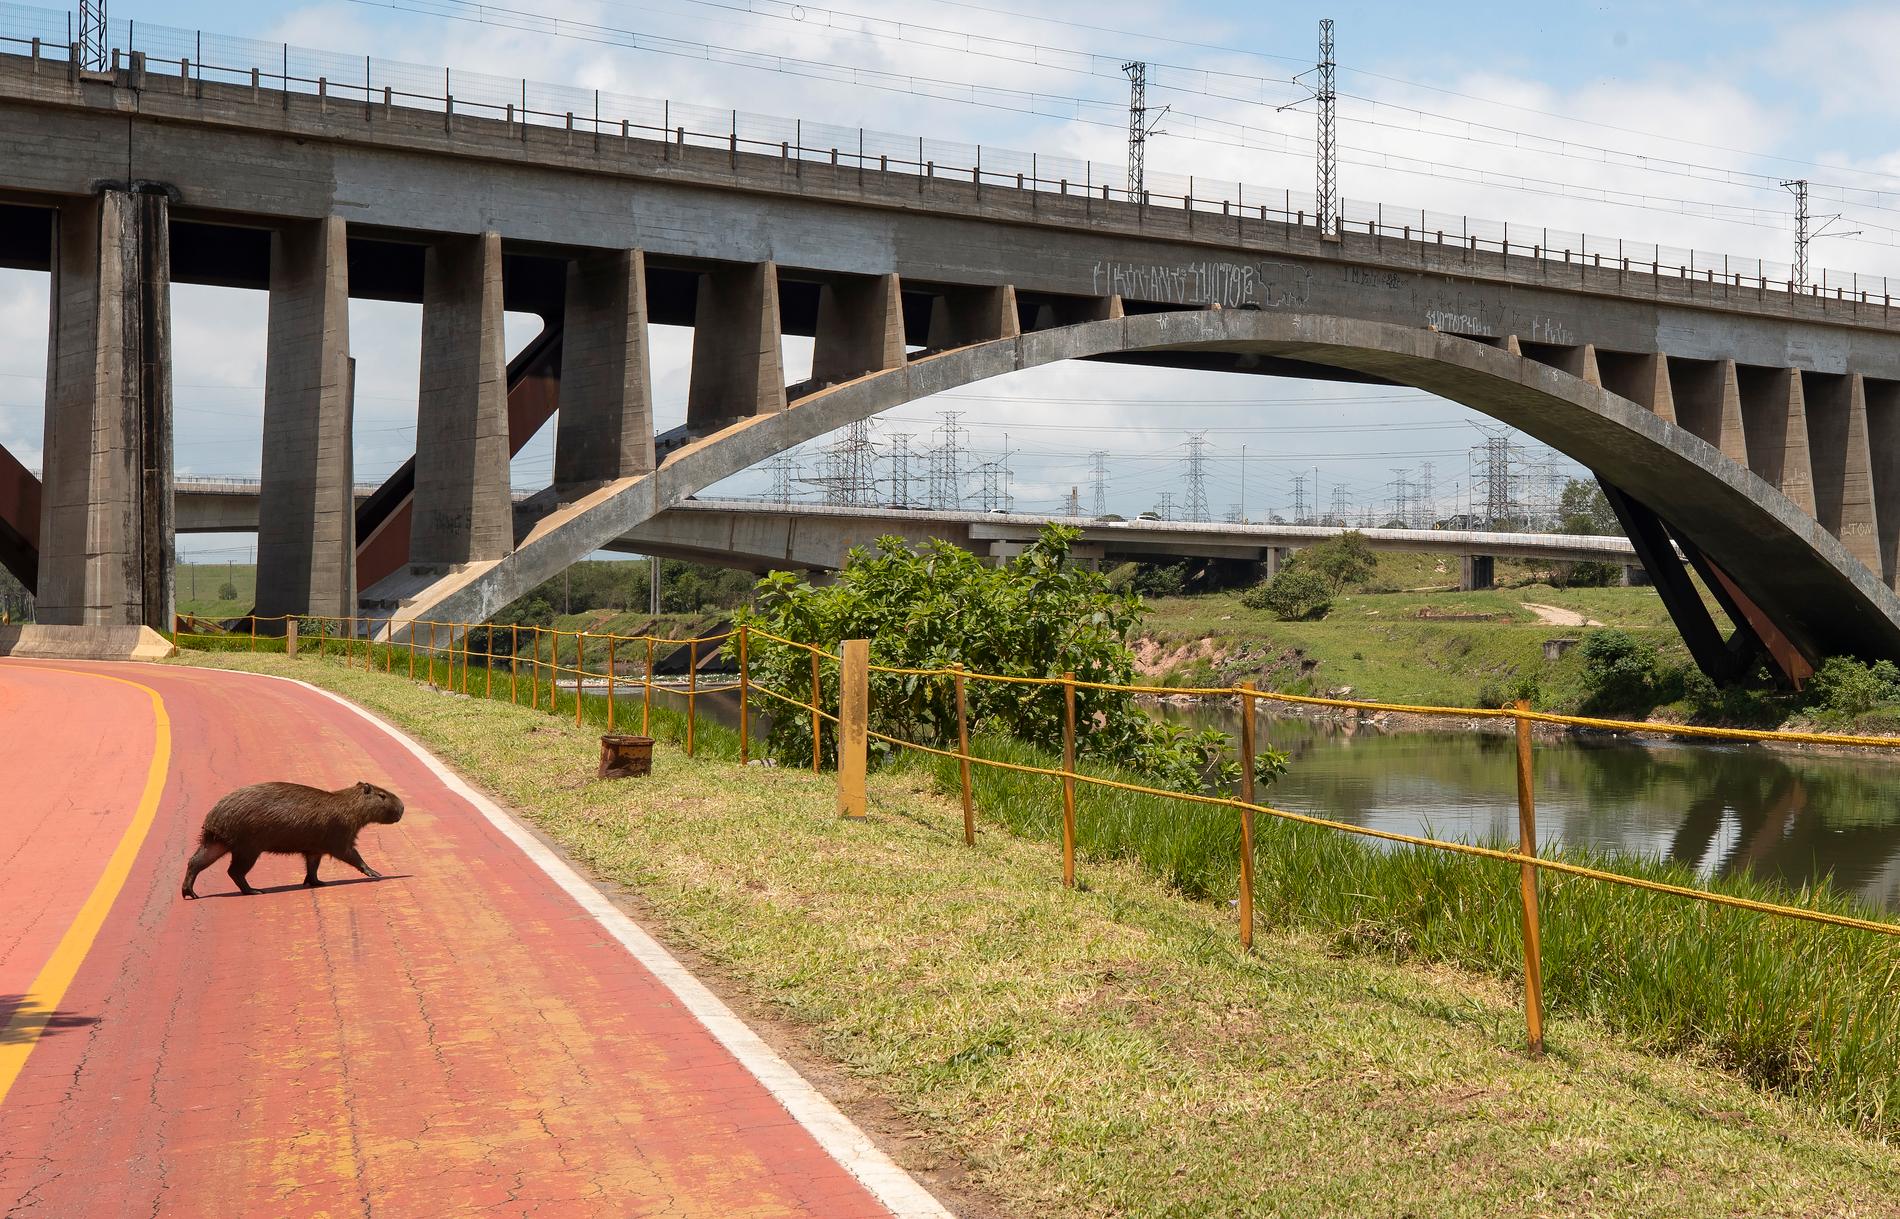 En kapybara – världens största gnagare – korsar en cykelväg vid Pinheirofloden i São Paulo. Arkivbild.